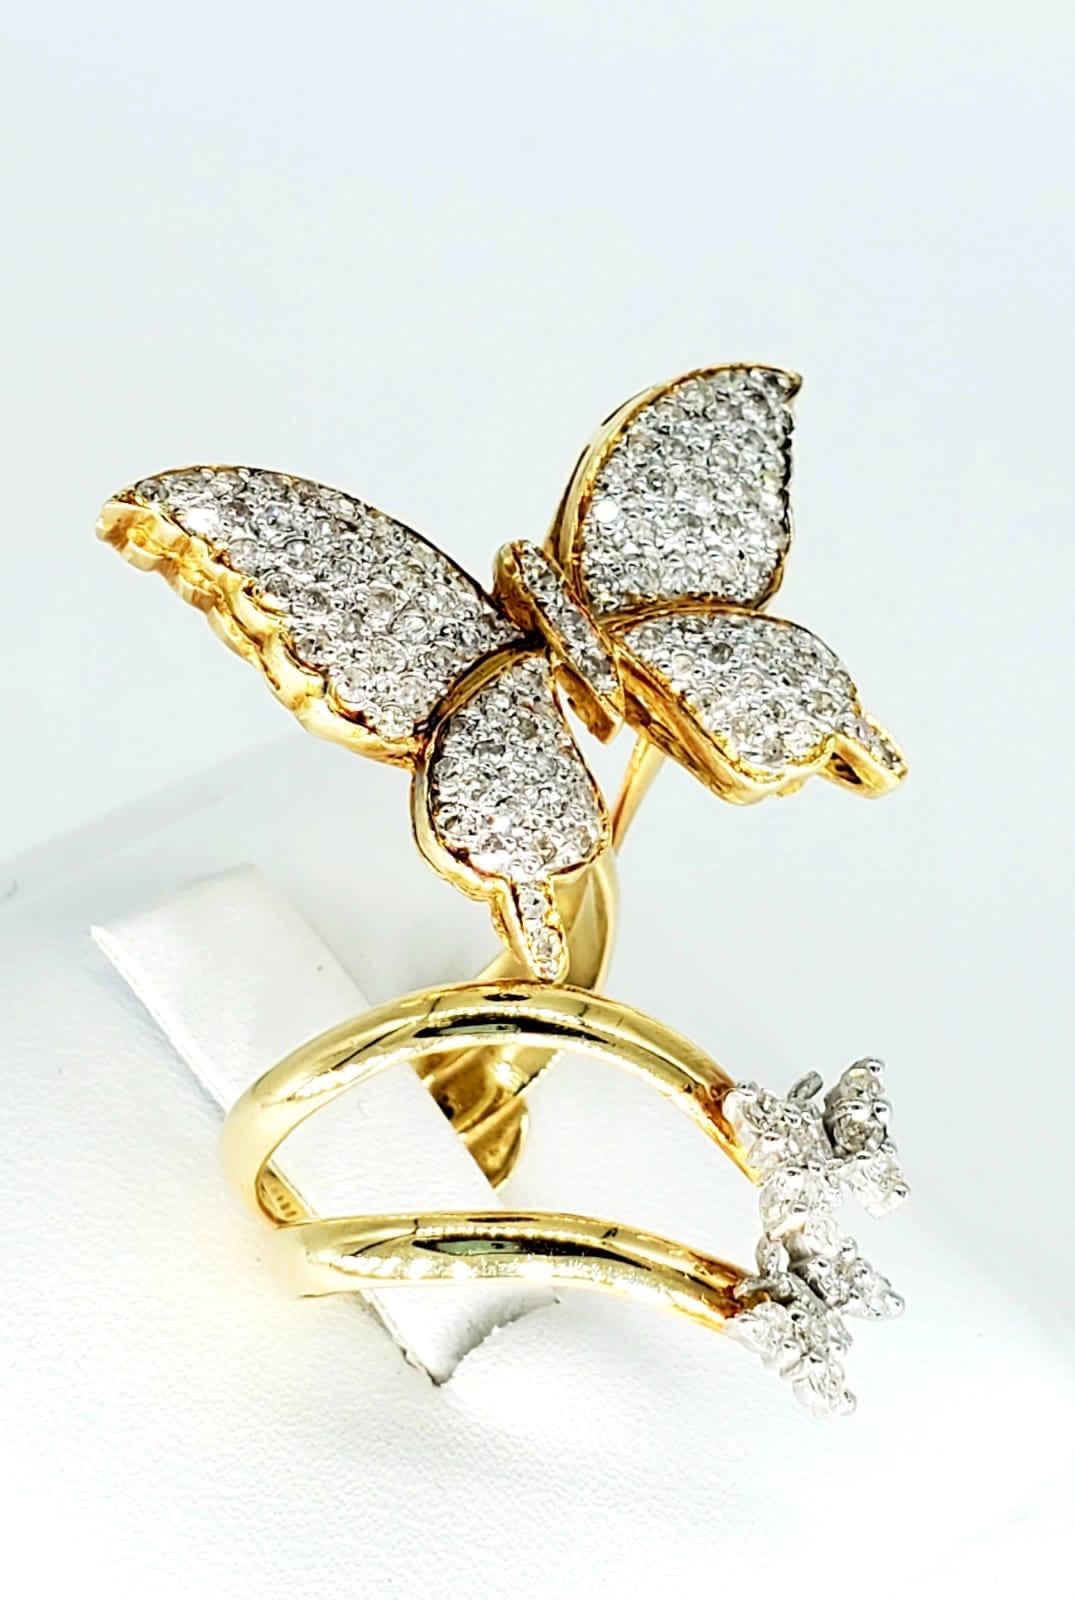 Designer 18k Gold & 1,50 Karat Diamant Schmetterling Ring. Der Ring ist atemberaubend und wirklich schön, das Bild wird ihm nicht gerecht. Der Ring hat runde weiße Diamanten mit einem Gewicht von ca. 1,50 Karat und ist aus massivem 18 Karat Gelbgold